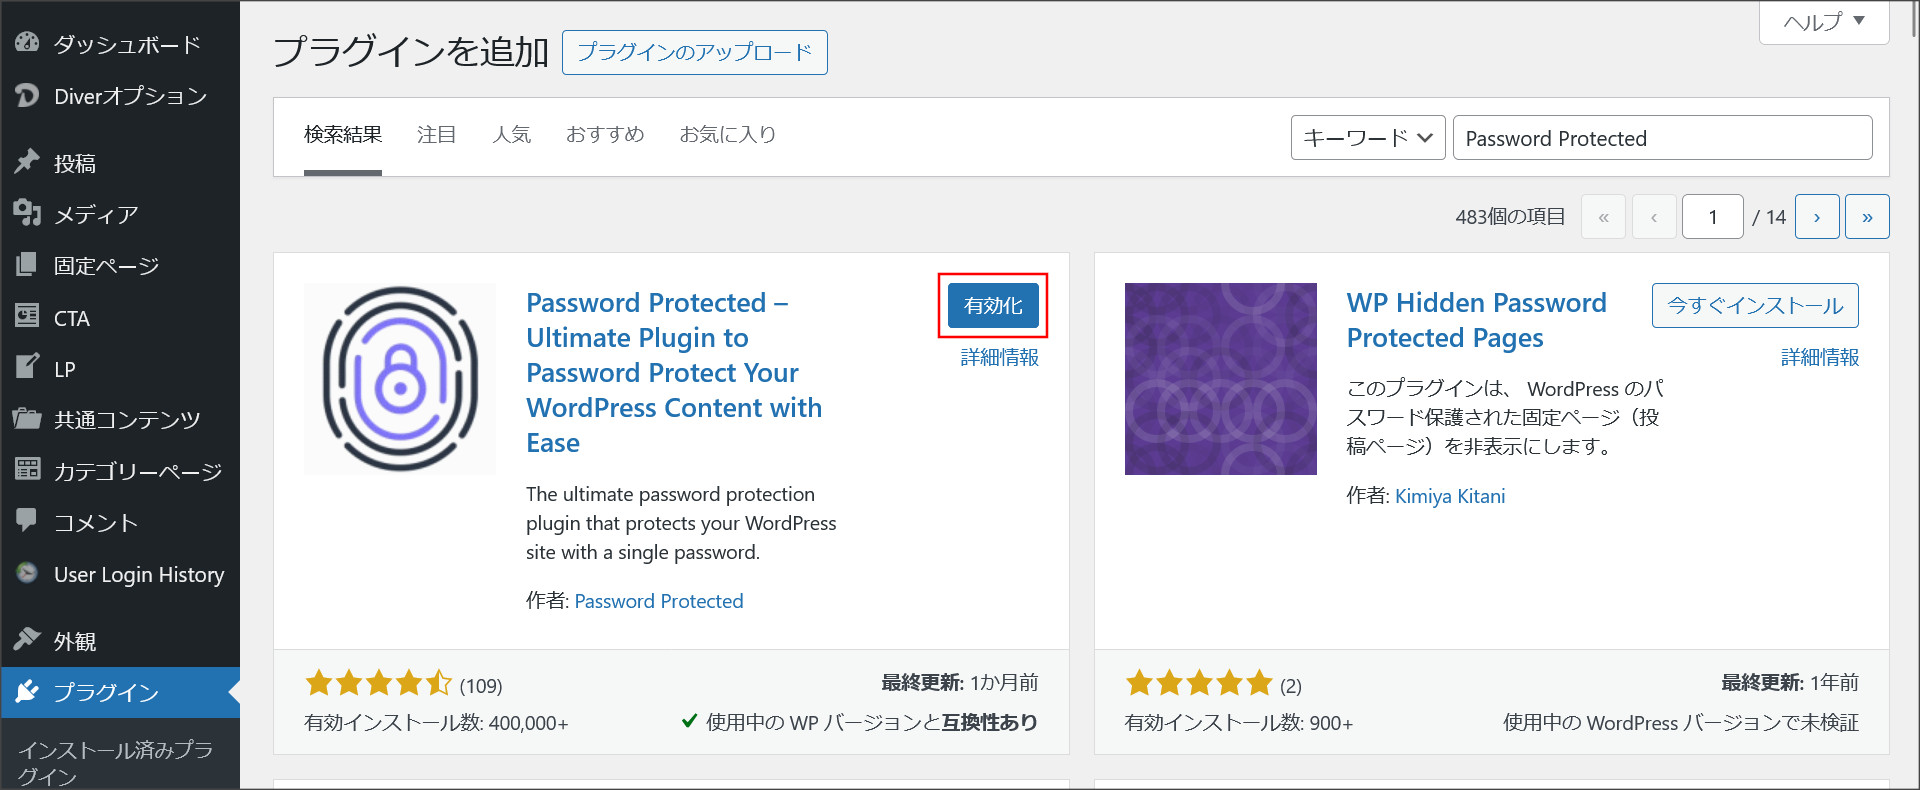 プラグイン「Password Protected」の検索・インストール